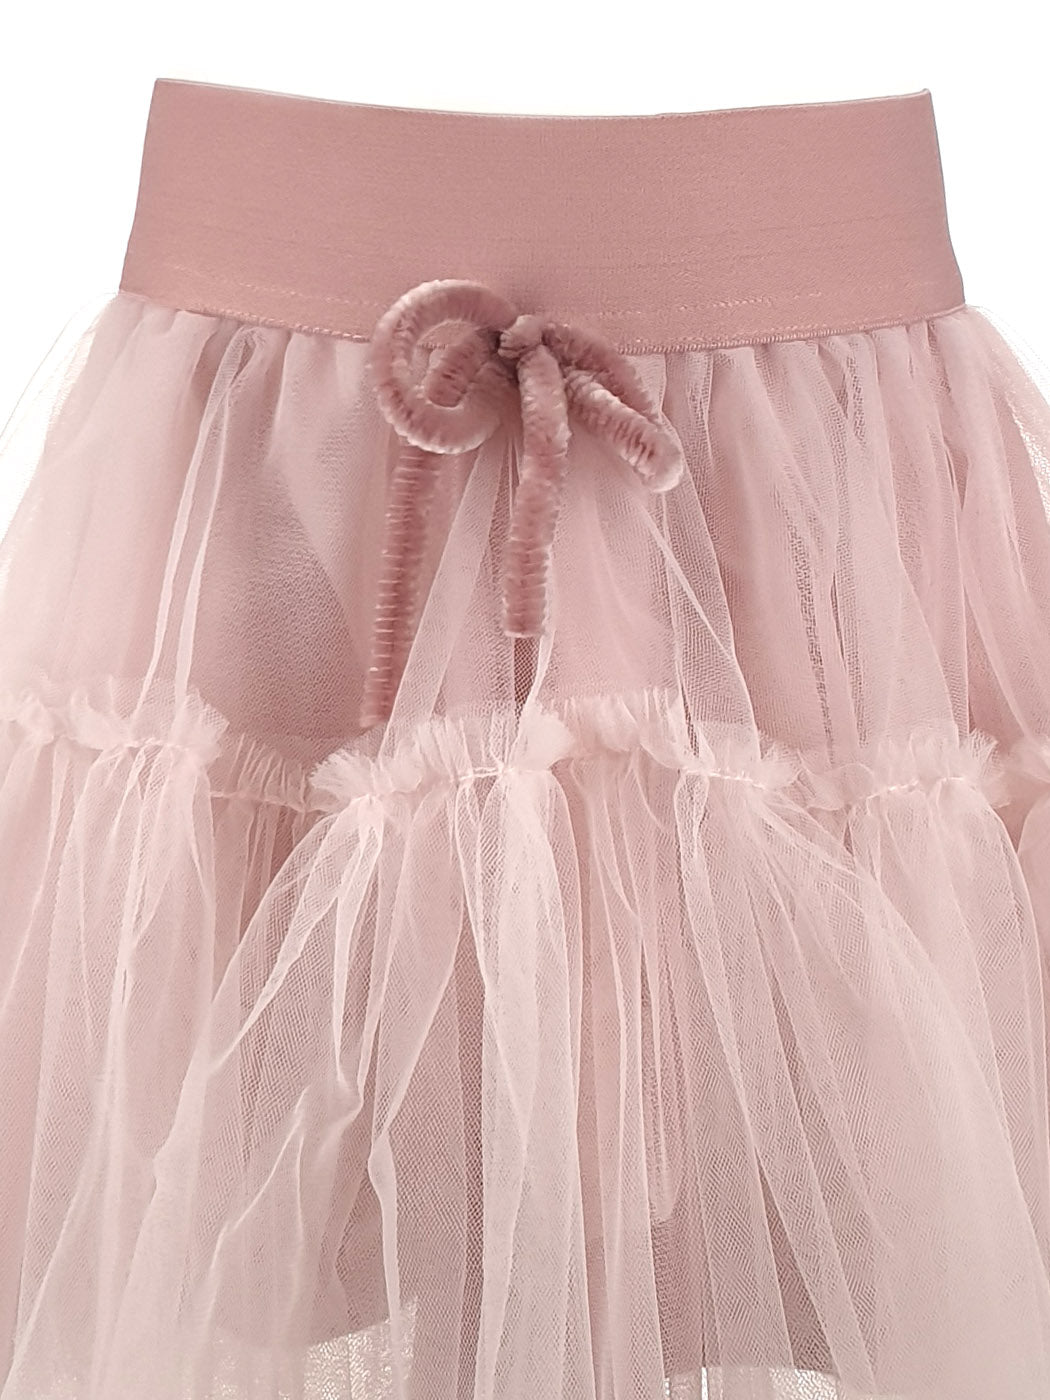 Ροζ τούλινη φούστα με λάστιχο στην μέση